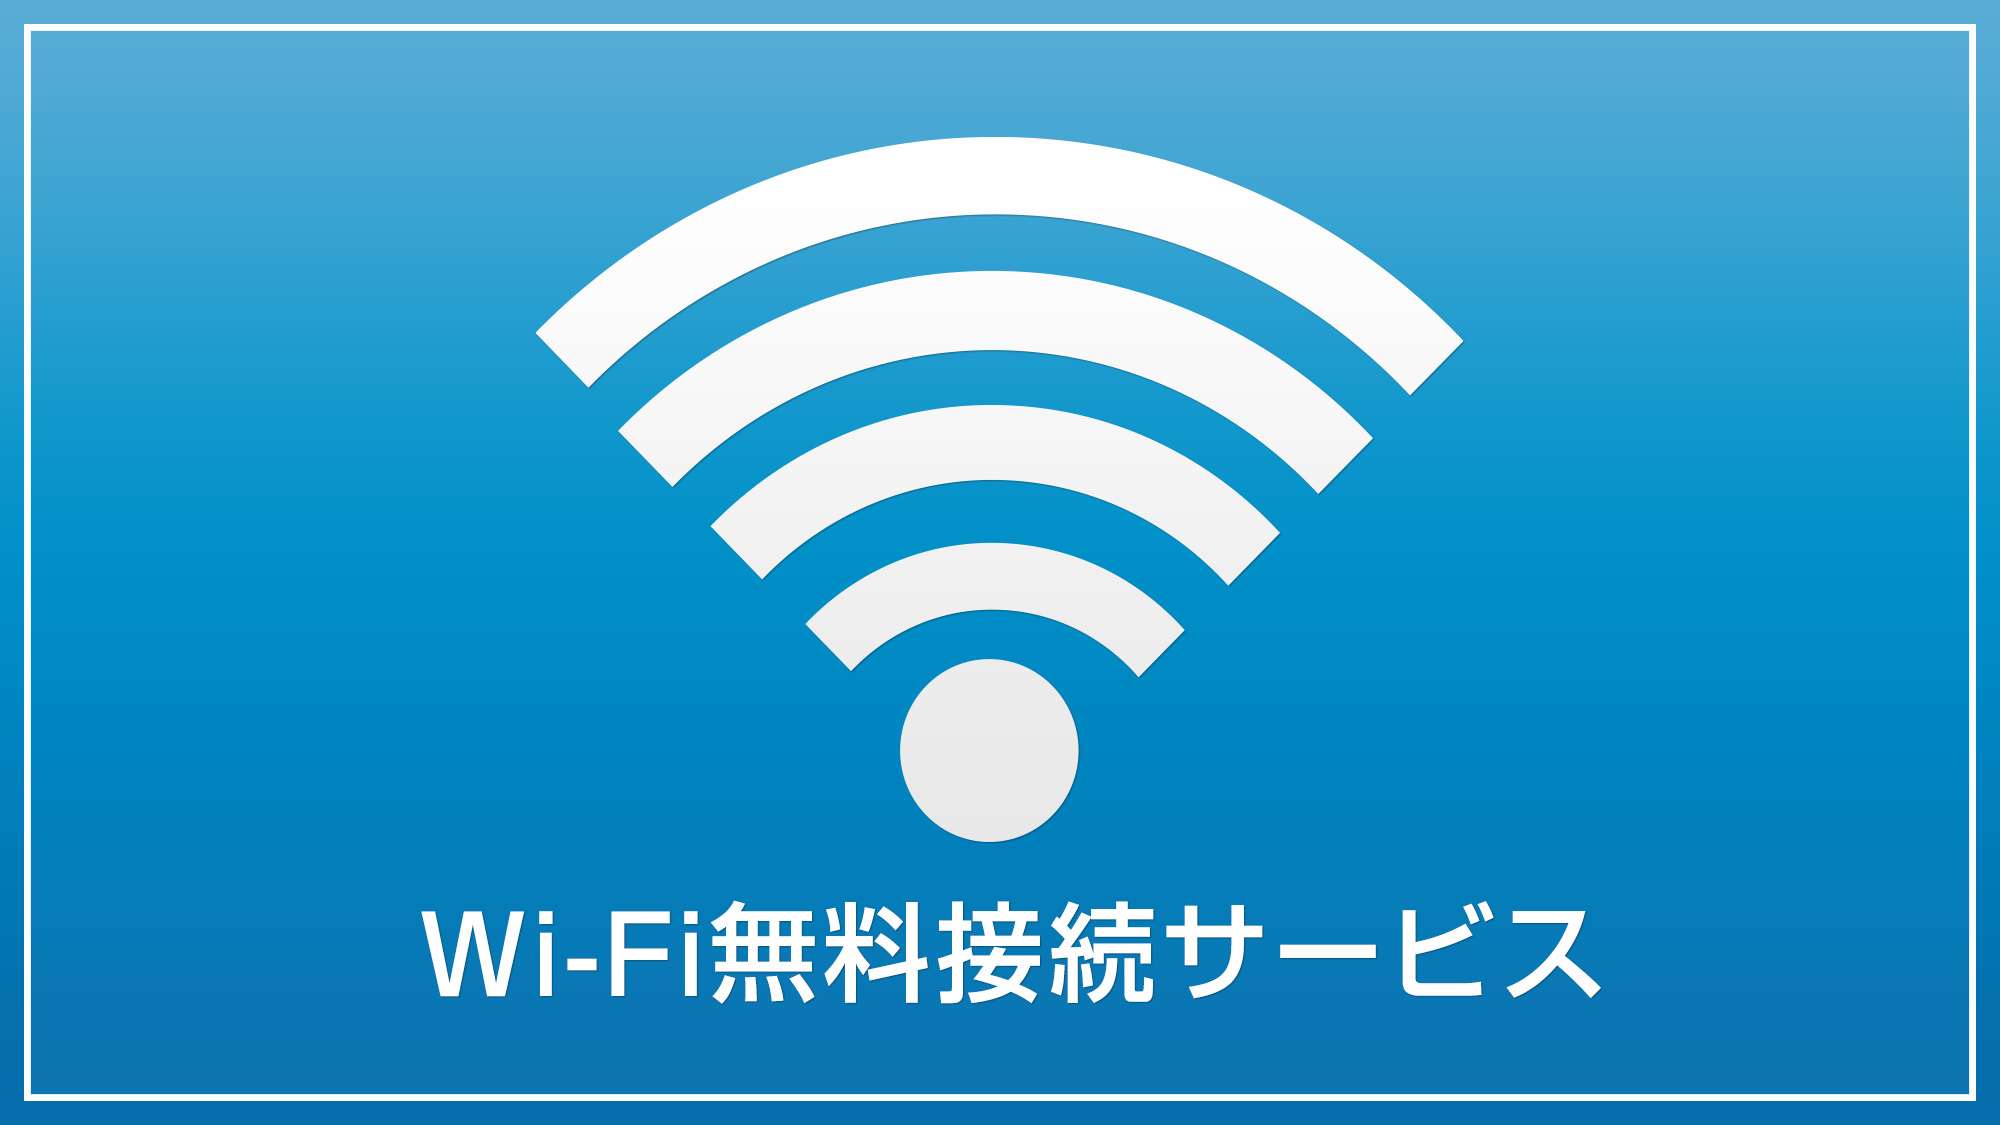 【Wi-Fi無料完備】全室対応